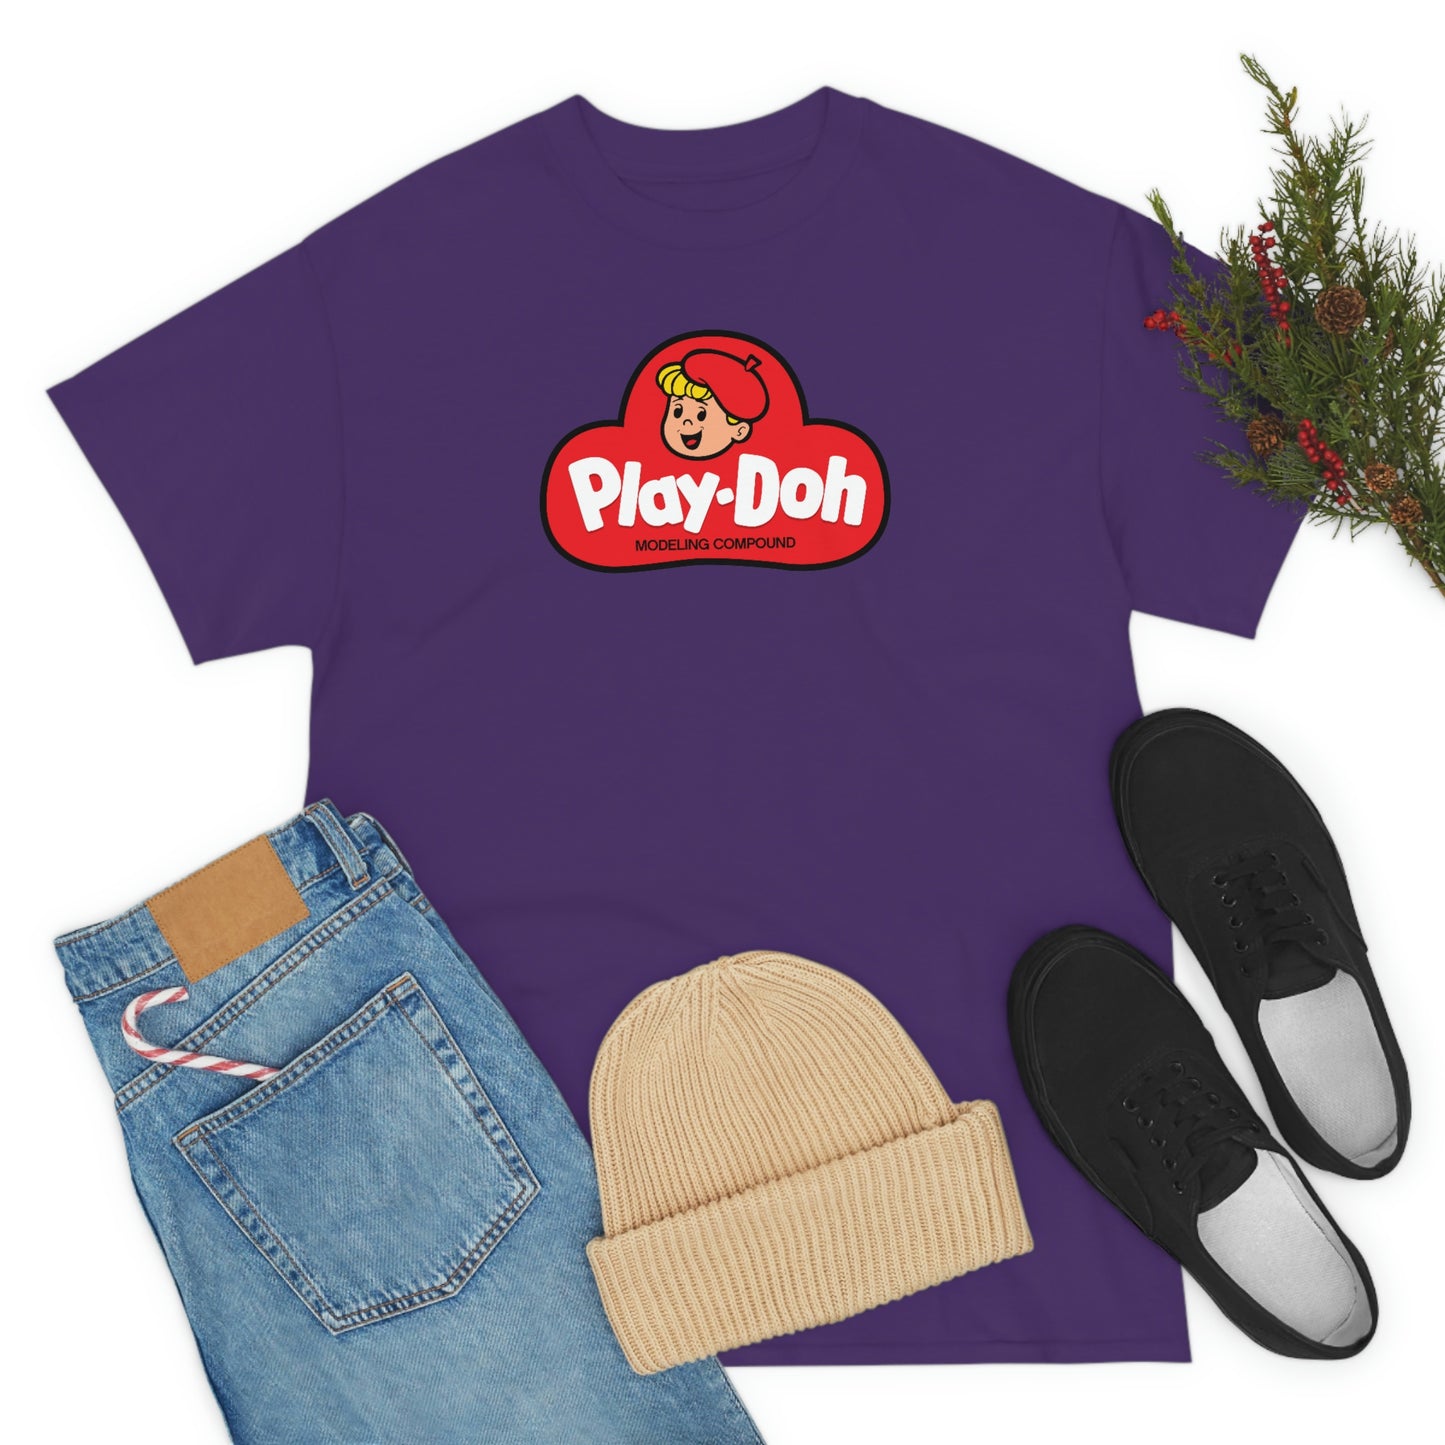 Play-Doh T-Shirt